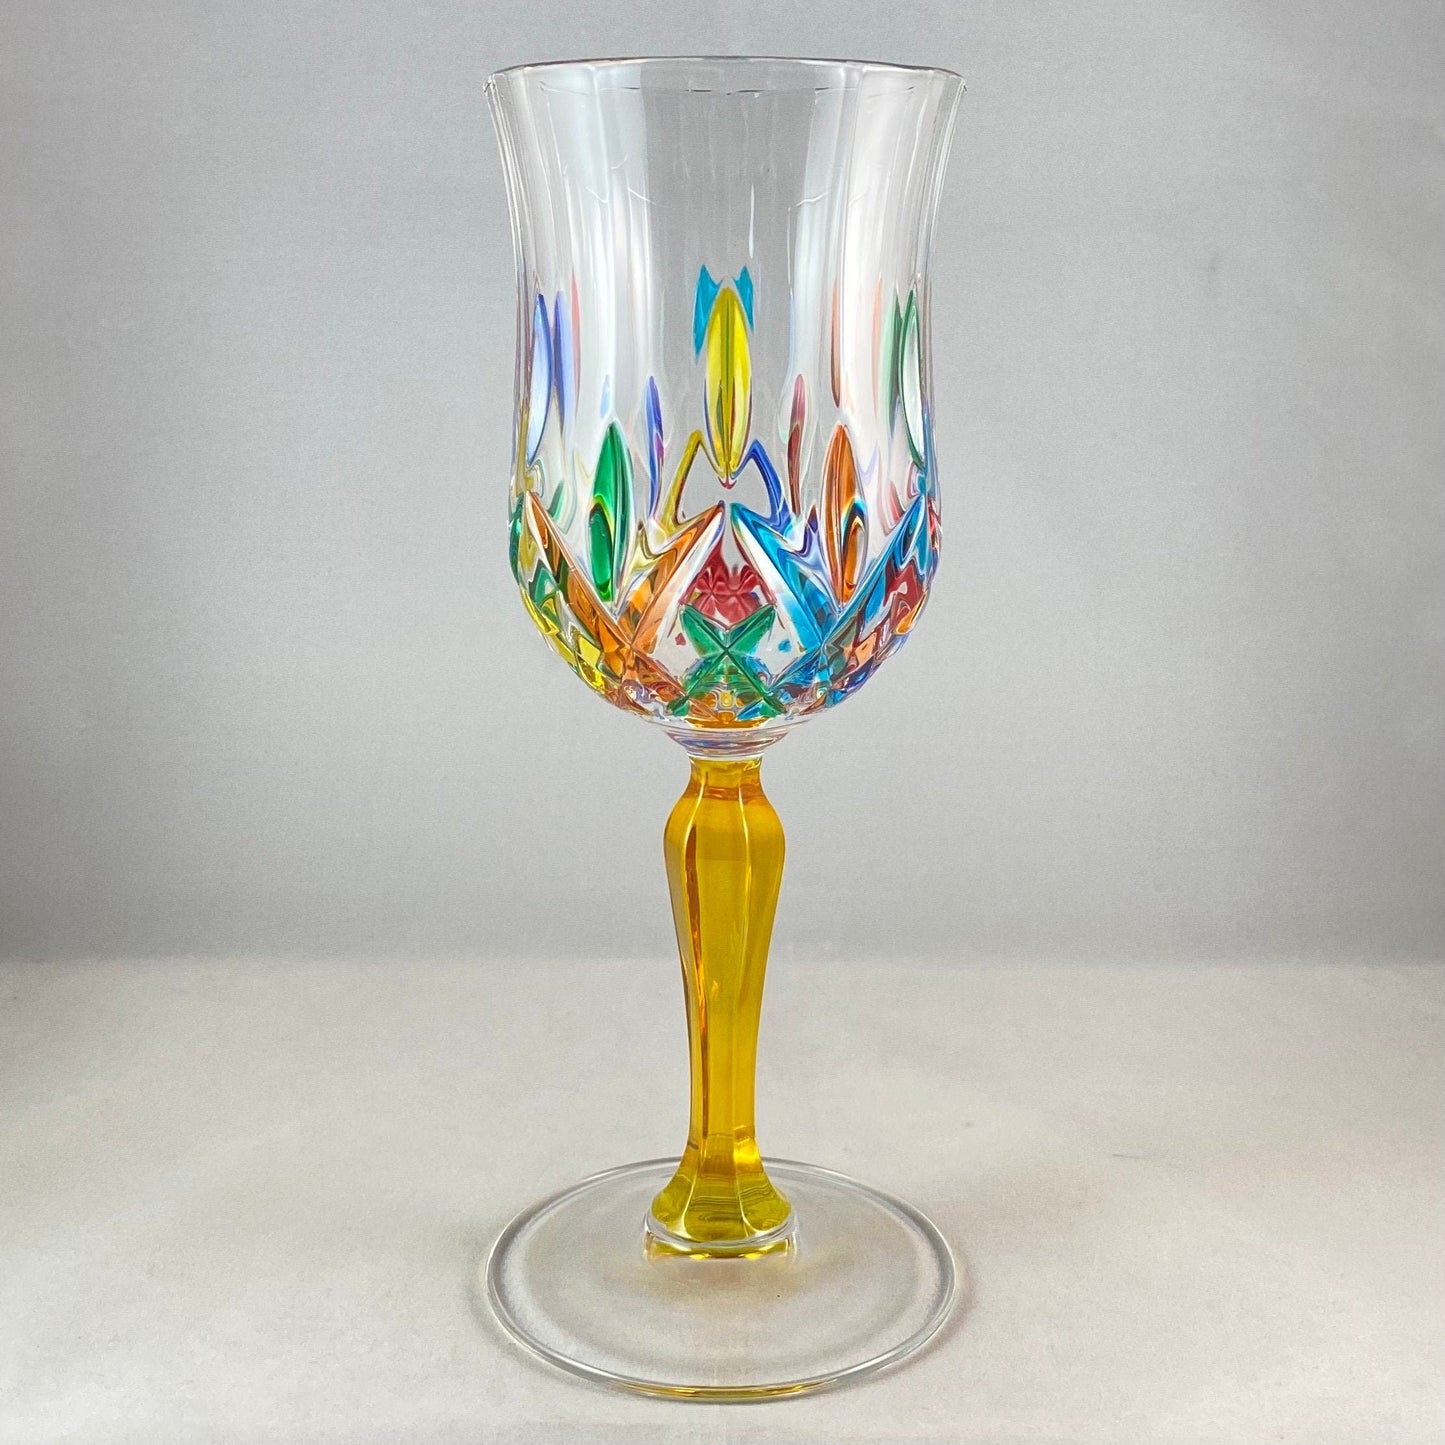 Yellow Stem Opera Venetian Glass Wine Glass - Handmade in Italy, Colorful Murano Glass